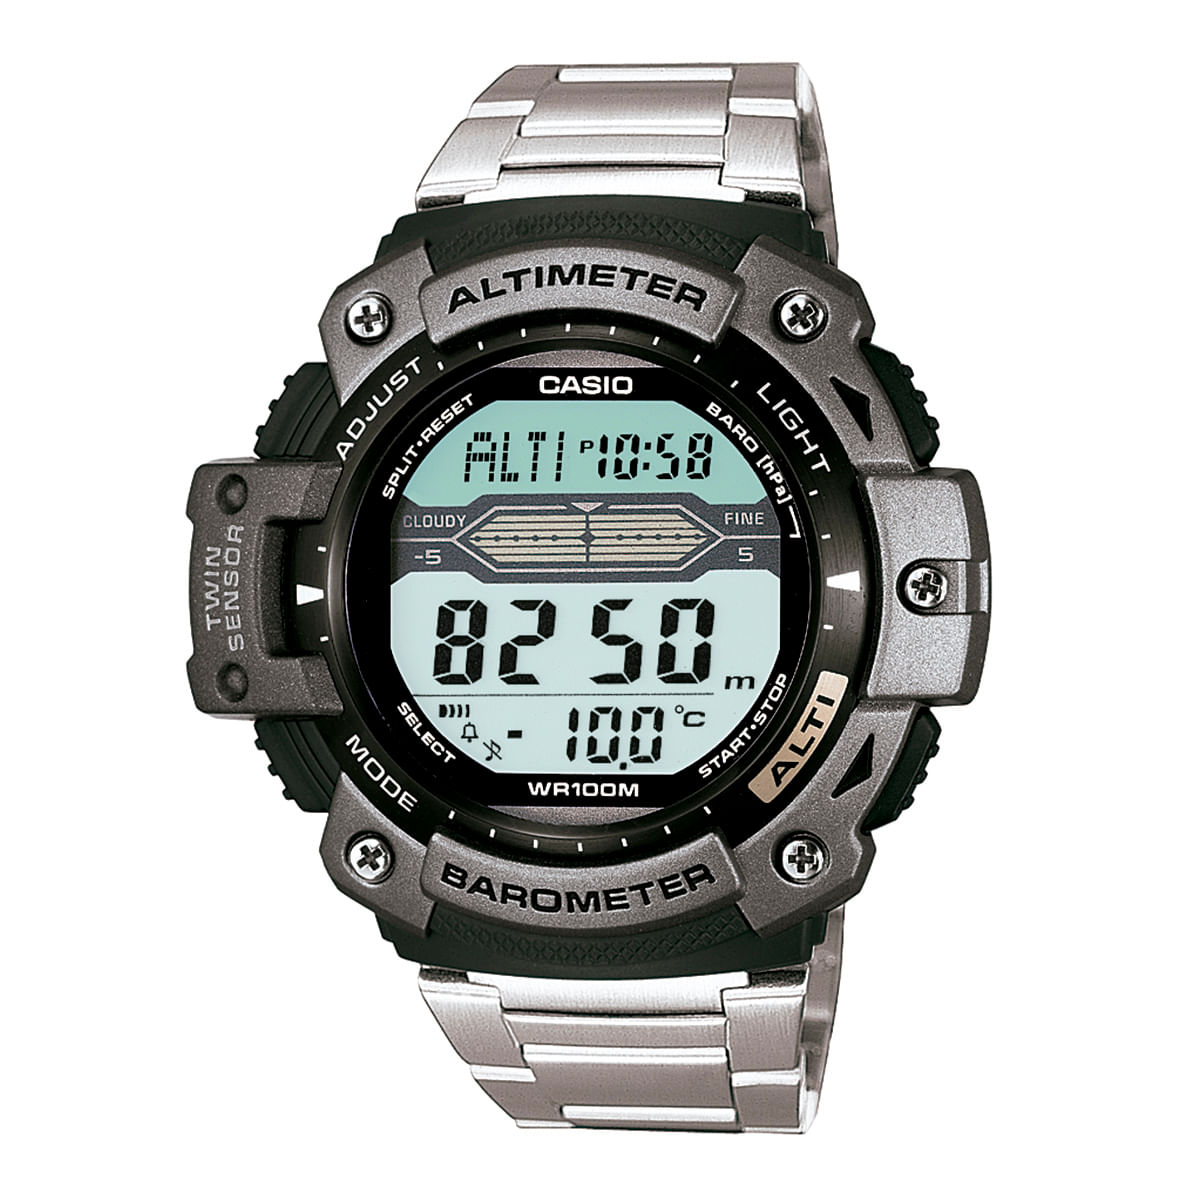 8690162_Relógio Casio Masculino Prata Digital SGW-300HD-1AVDR_1_Zoom